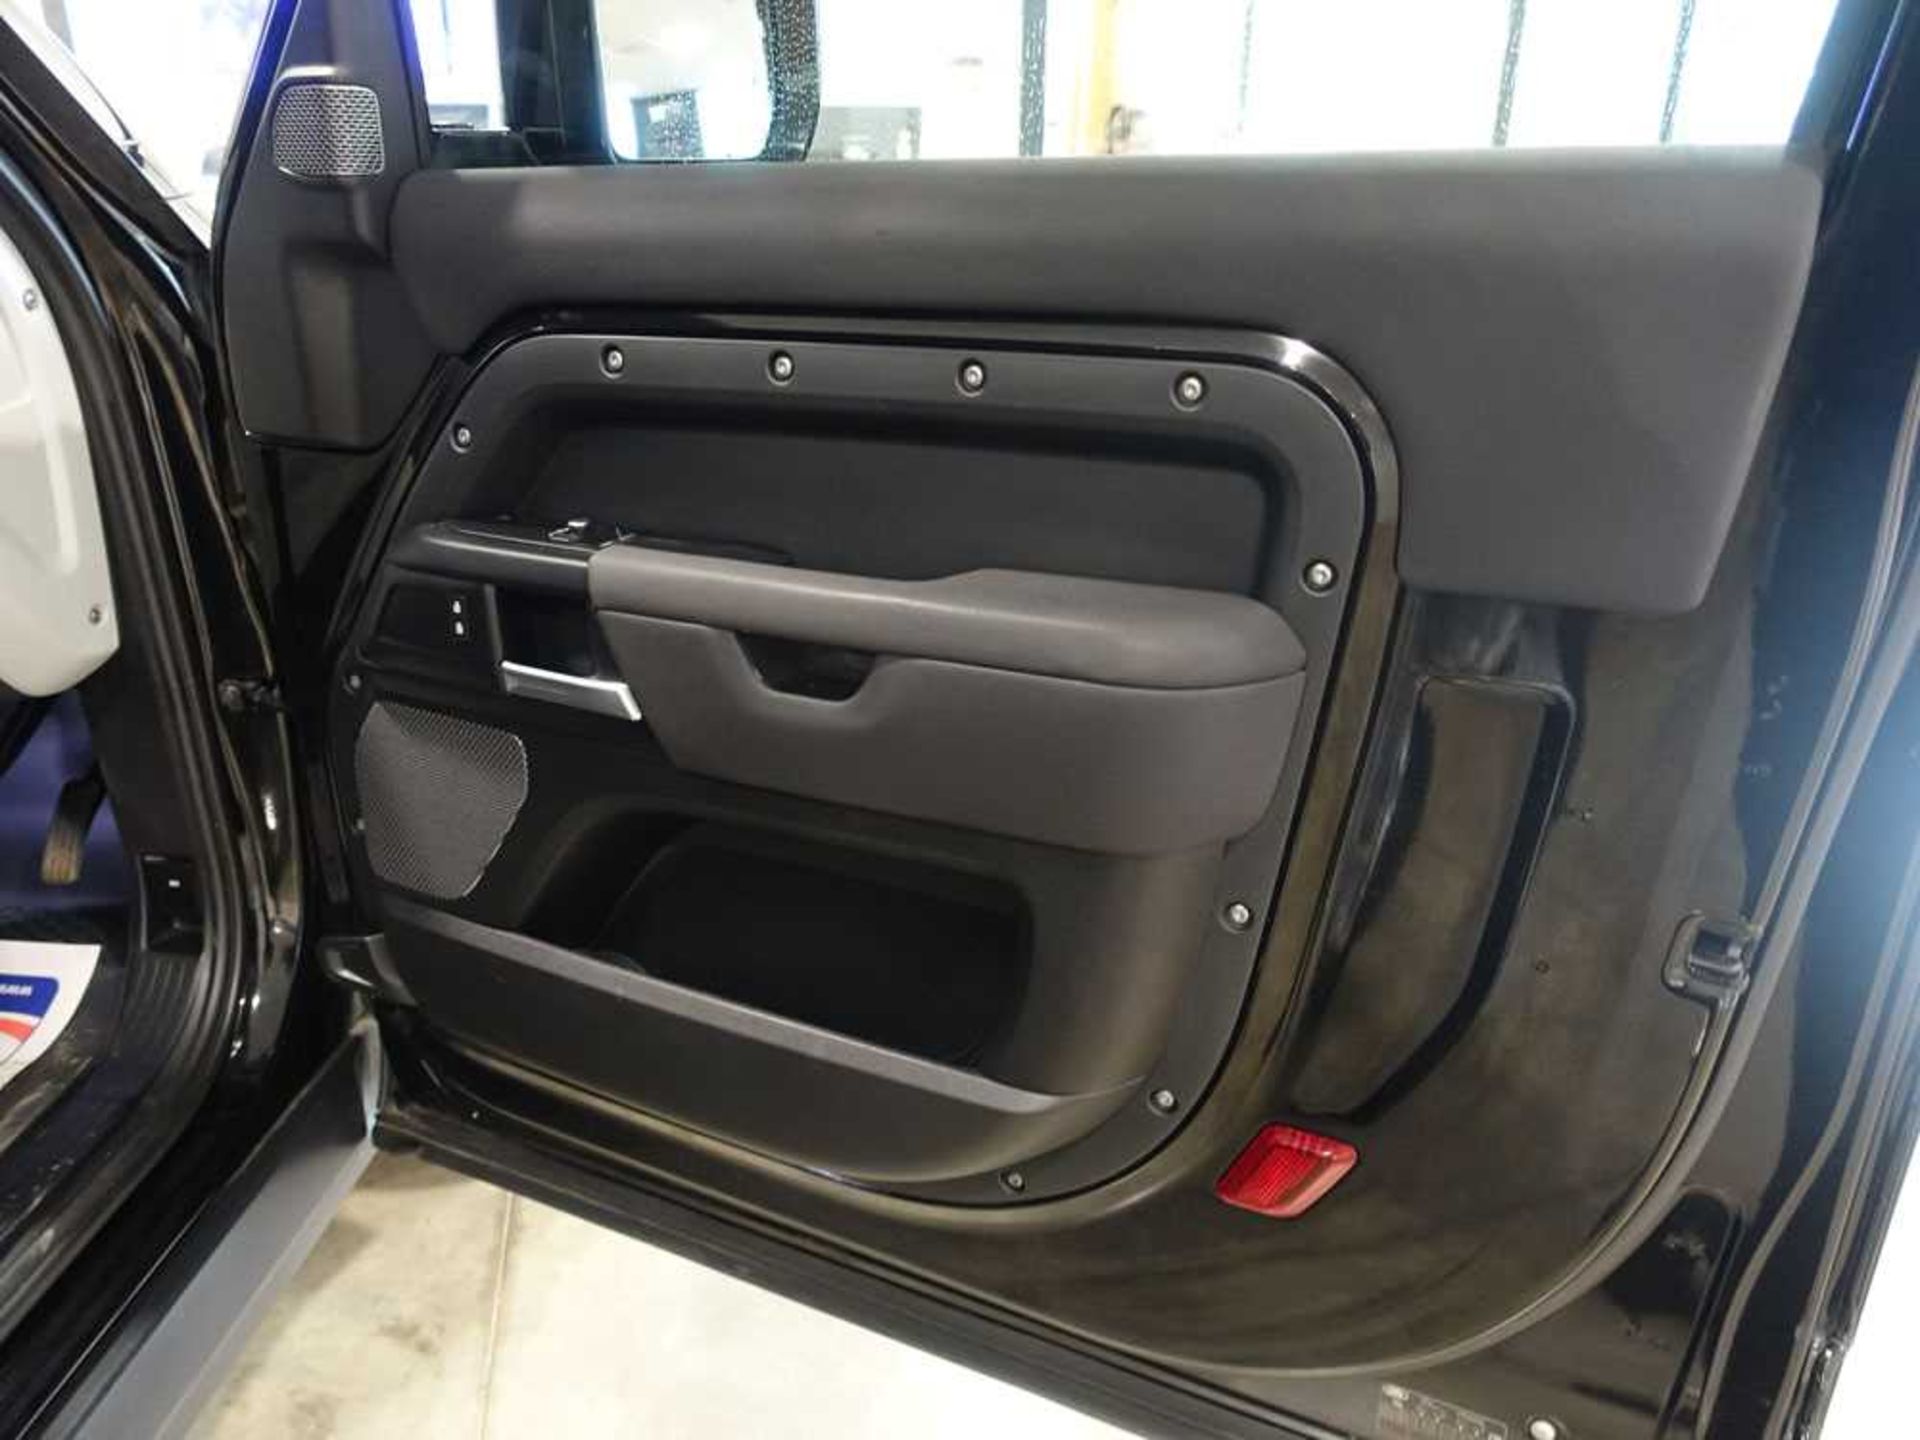 +VAT AX21 00G (2021) Land Rover Defender Hardtop D MHEV, automatic, 2 door panel van LGV in black, - Image 12 of 22